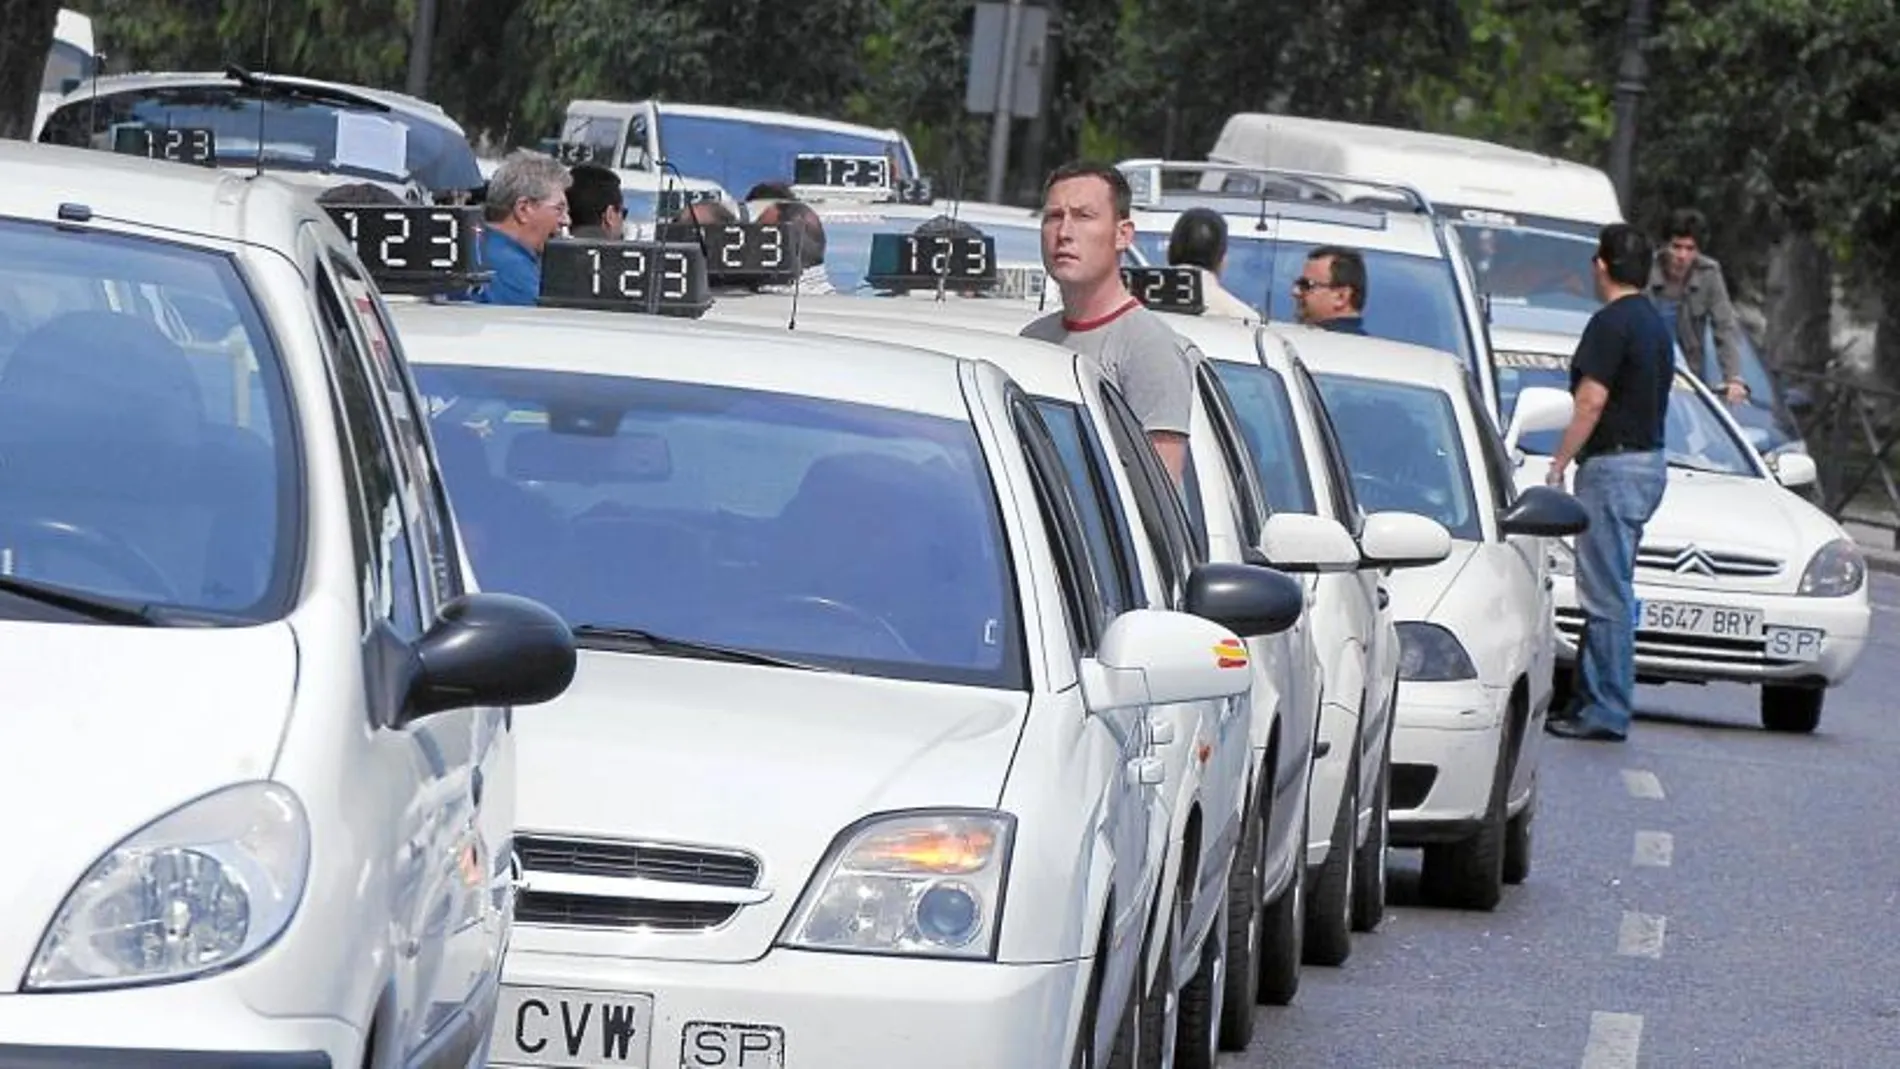 Los taxistas autónomos han protagonizado numerosas protestas durante el último año. Afirman que las últimas decisiones han perjudicado sus condiciones laborales